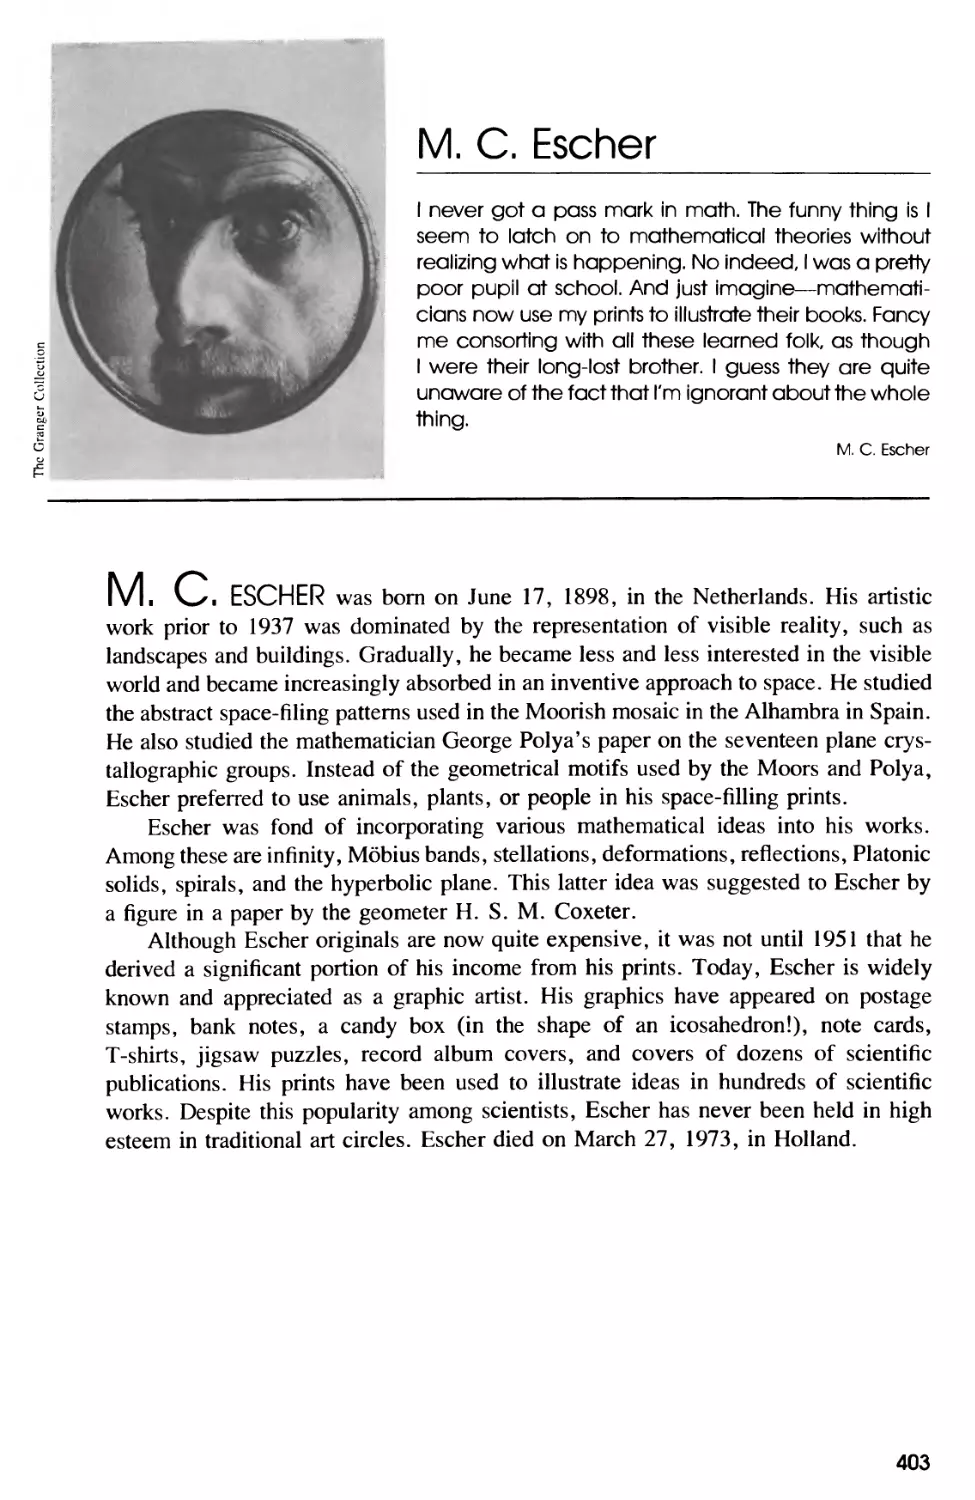 Biography of M. C. Escher